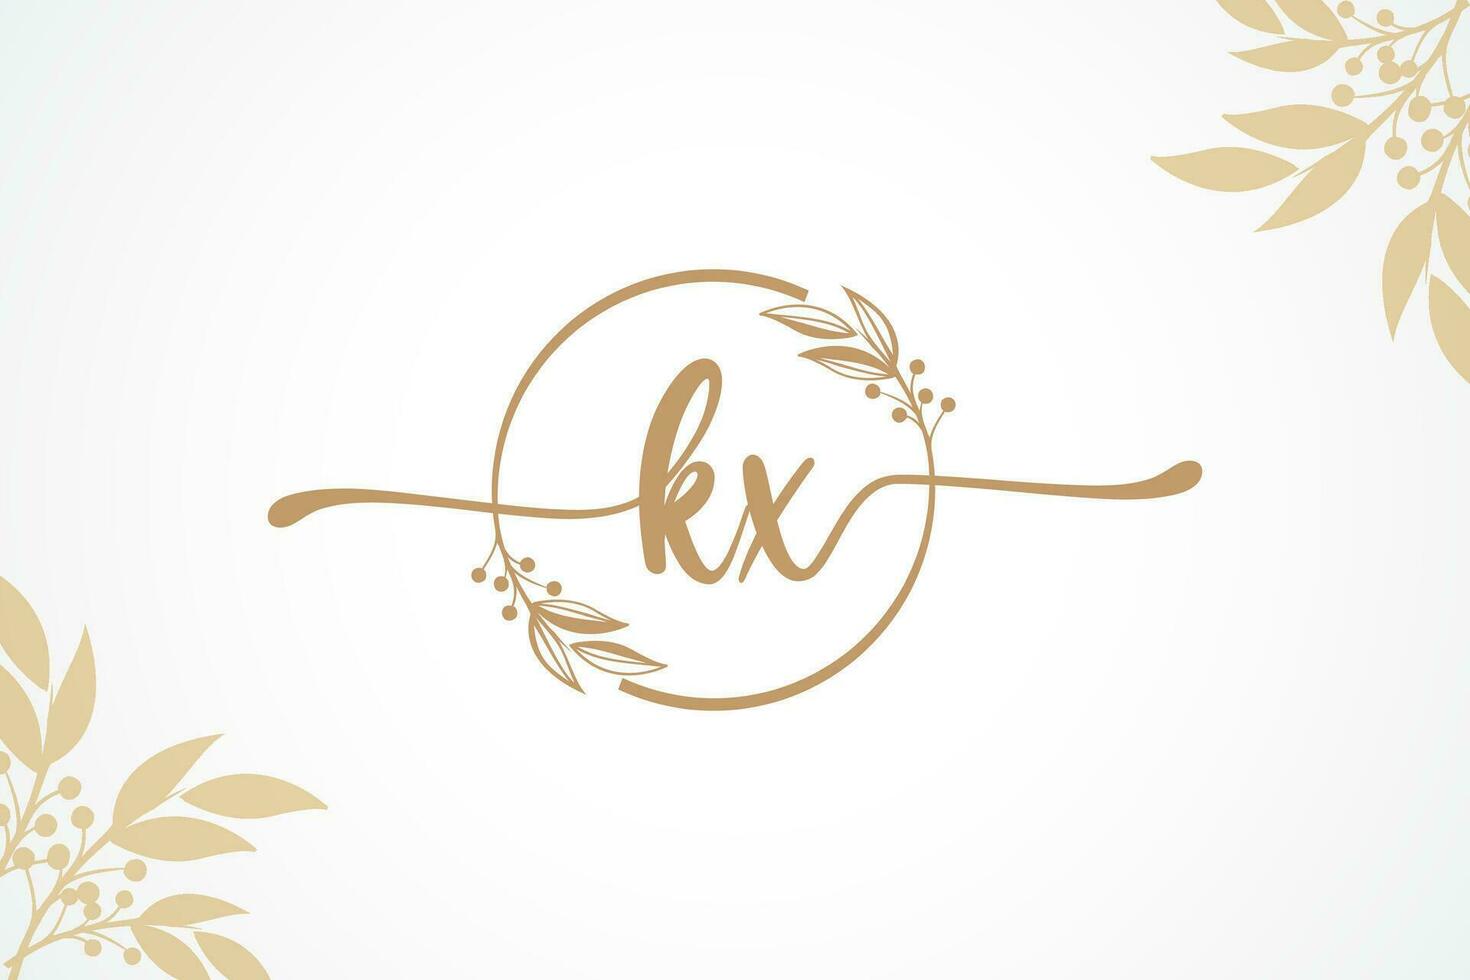 luxe or Signature initiale kx logo conception isolé feuille et fleur vecteur